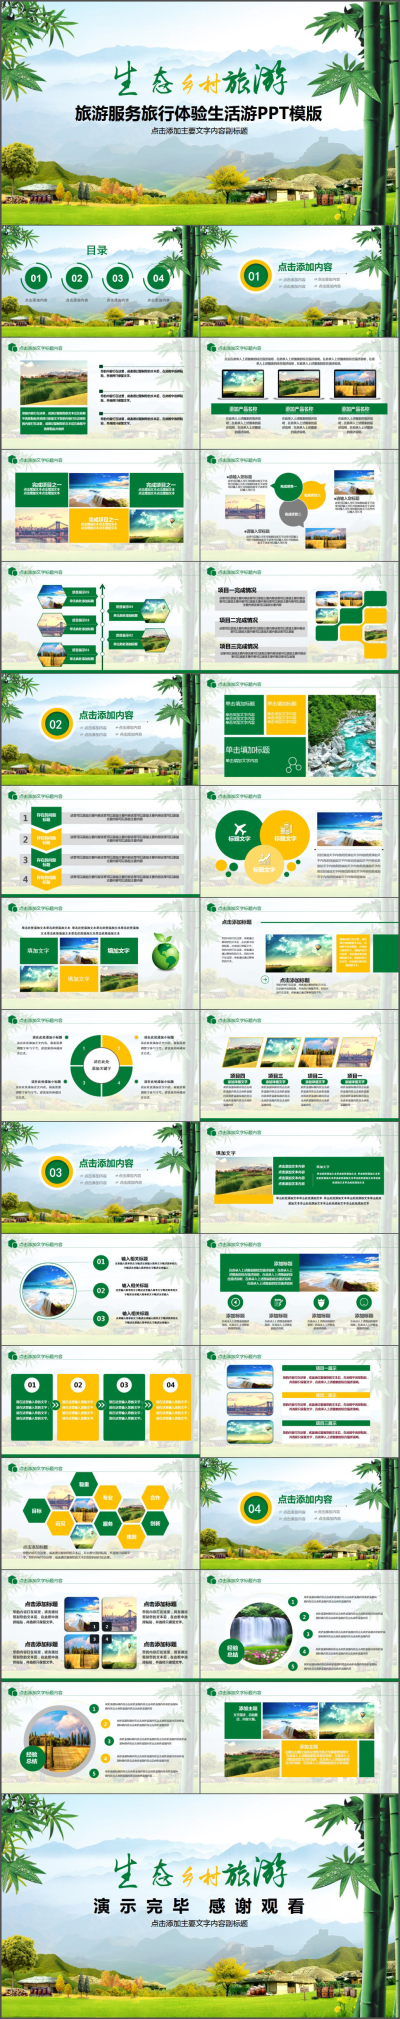 绿色生态环保乡村旅游美丽农村推广策划PPT模板